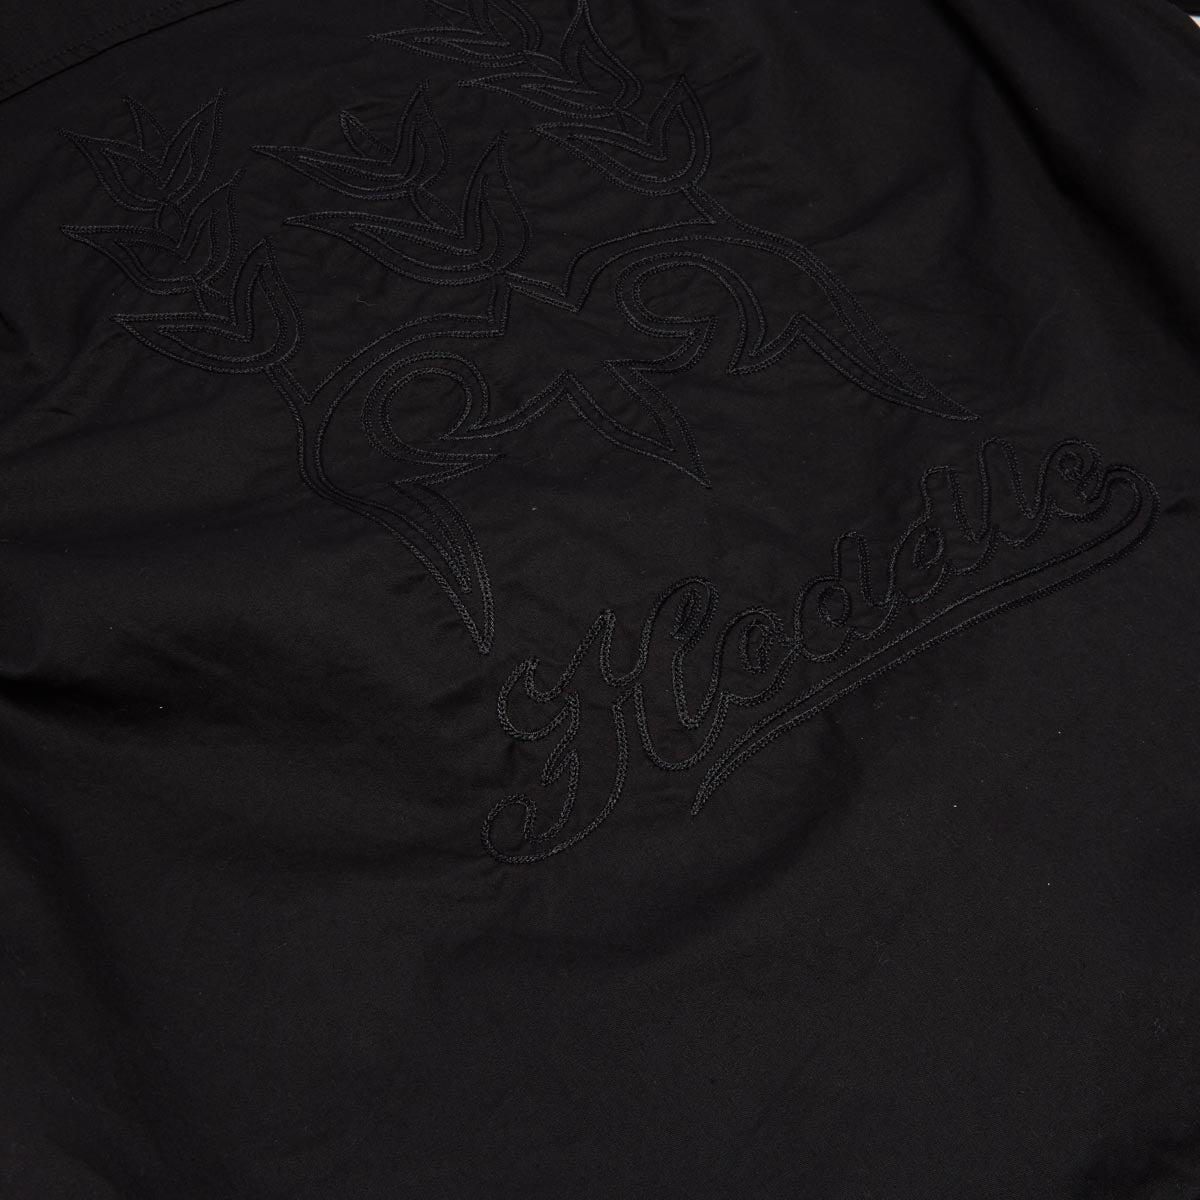 Hoddle Cheval Shirt - Black image 3